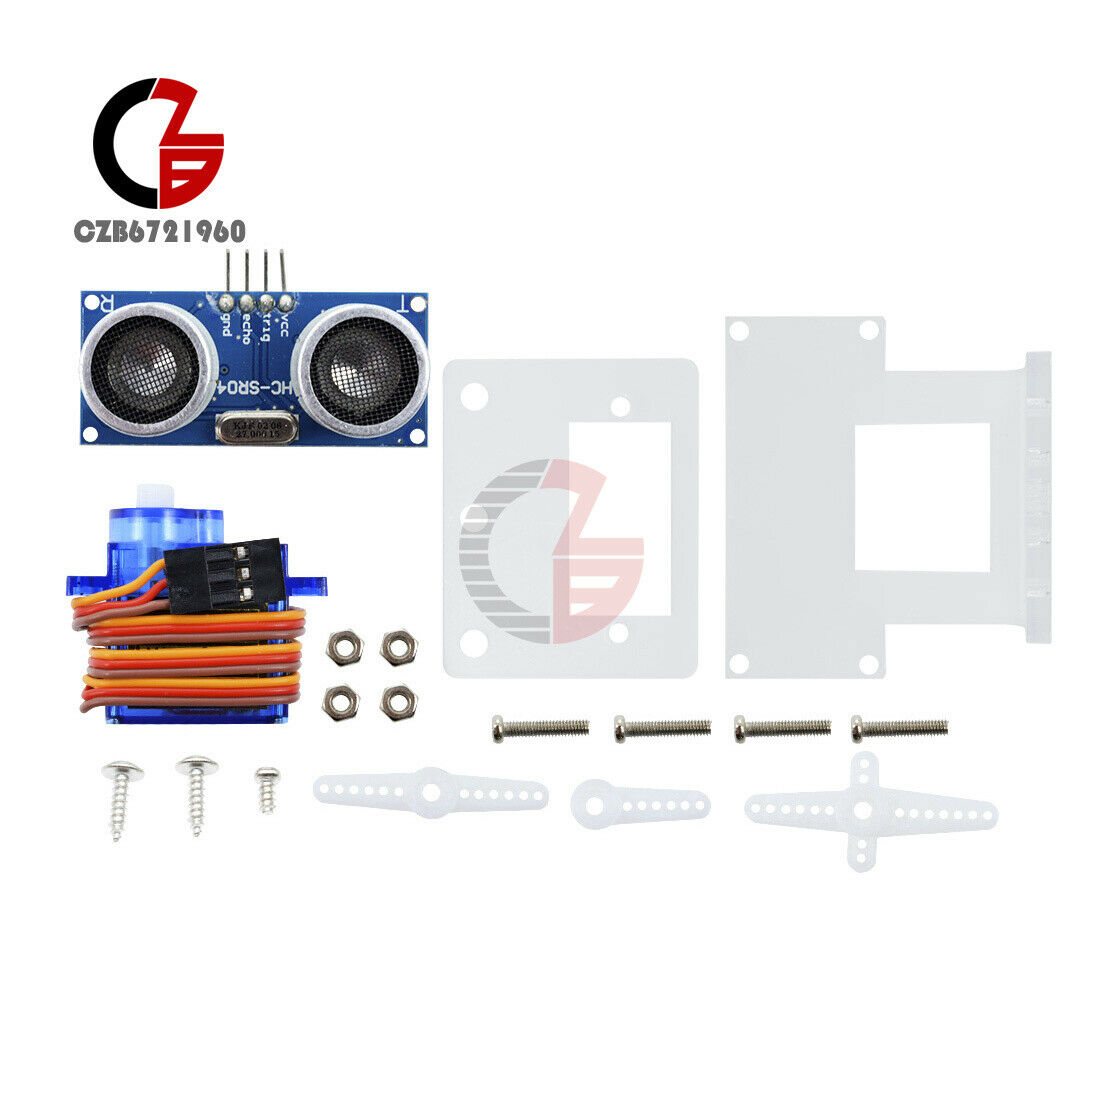 HC-SR04 SG90 Servo Ultrasonic Ranging Module & Car Mounting Bracket Kit